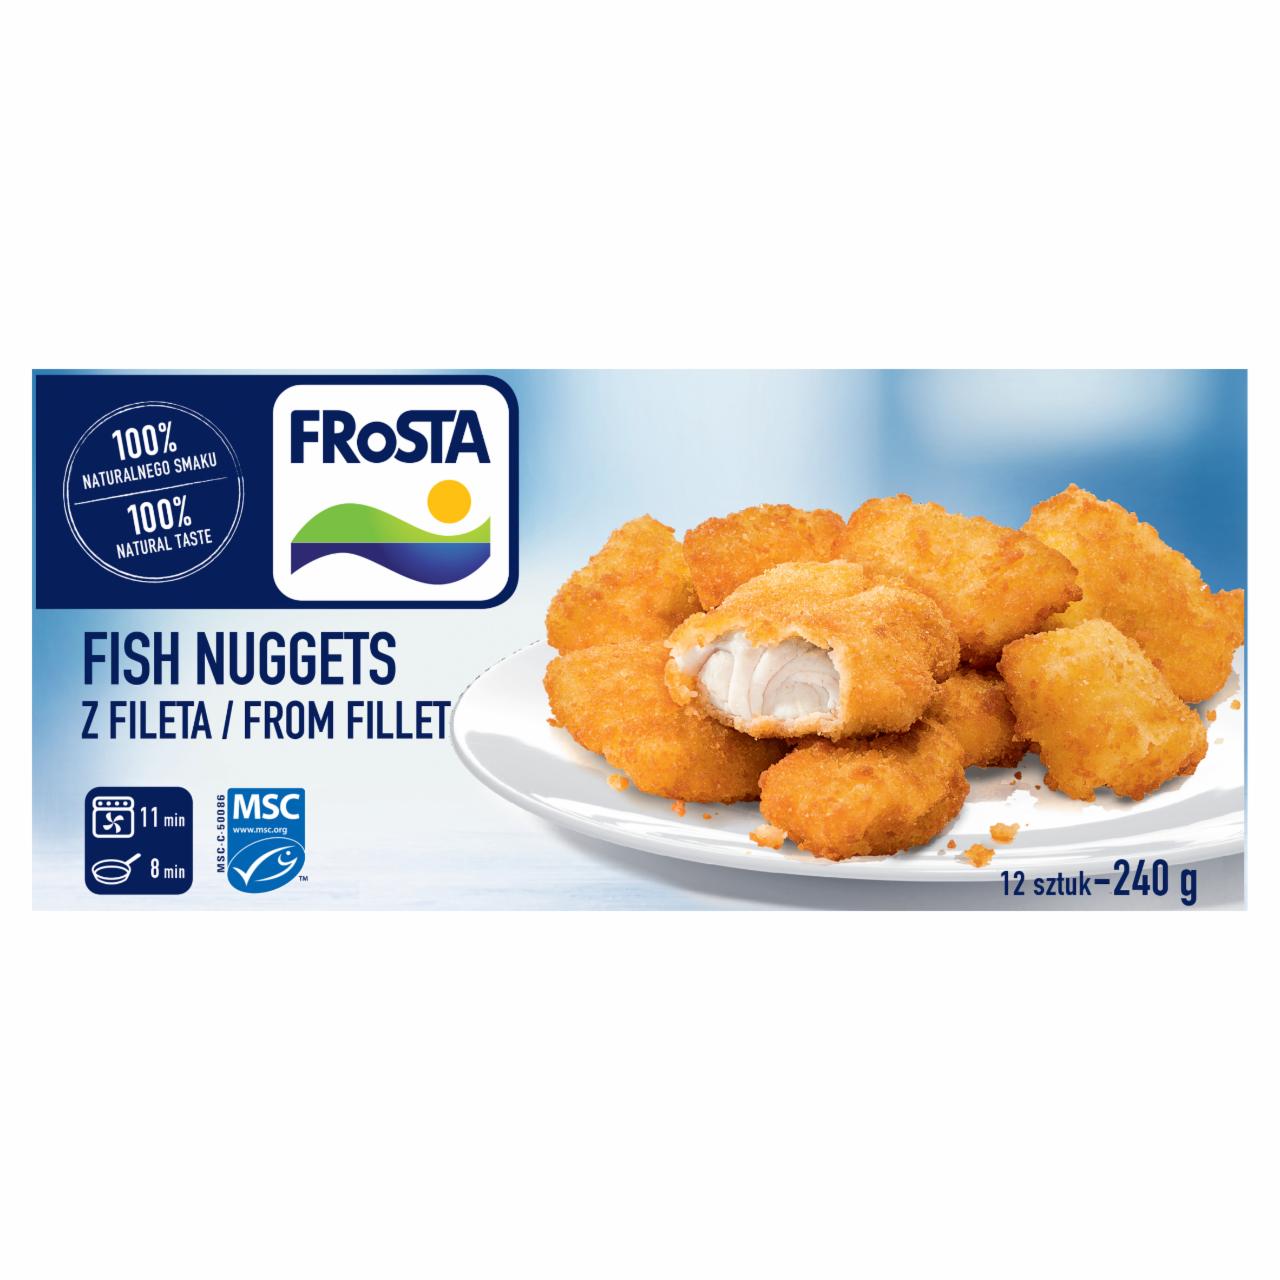 Zdjęcia - FRoSTA Fish Nuggets Mini porcje z filetów rybnych w chrupiącej panierce 240 g (12 sztuk)